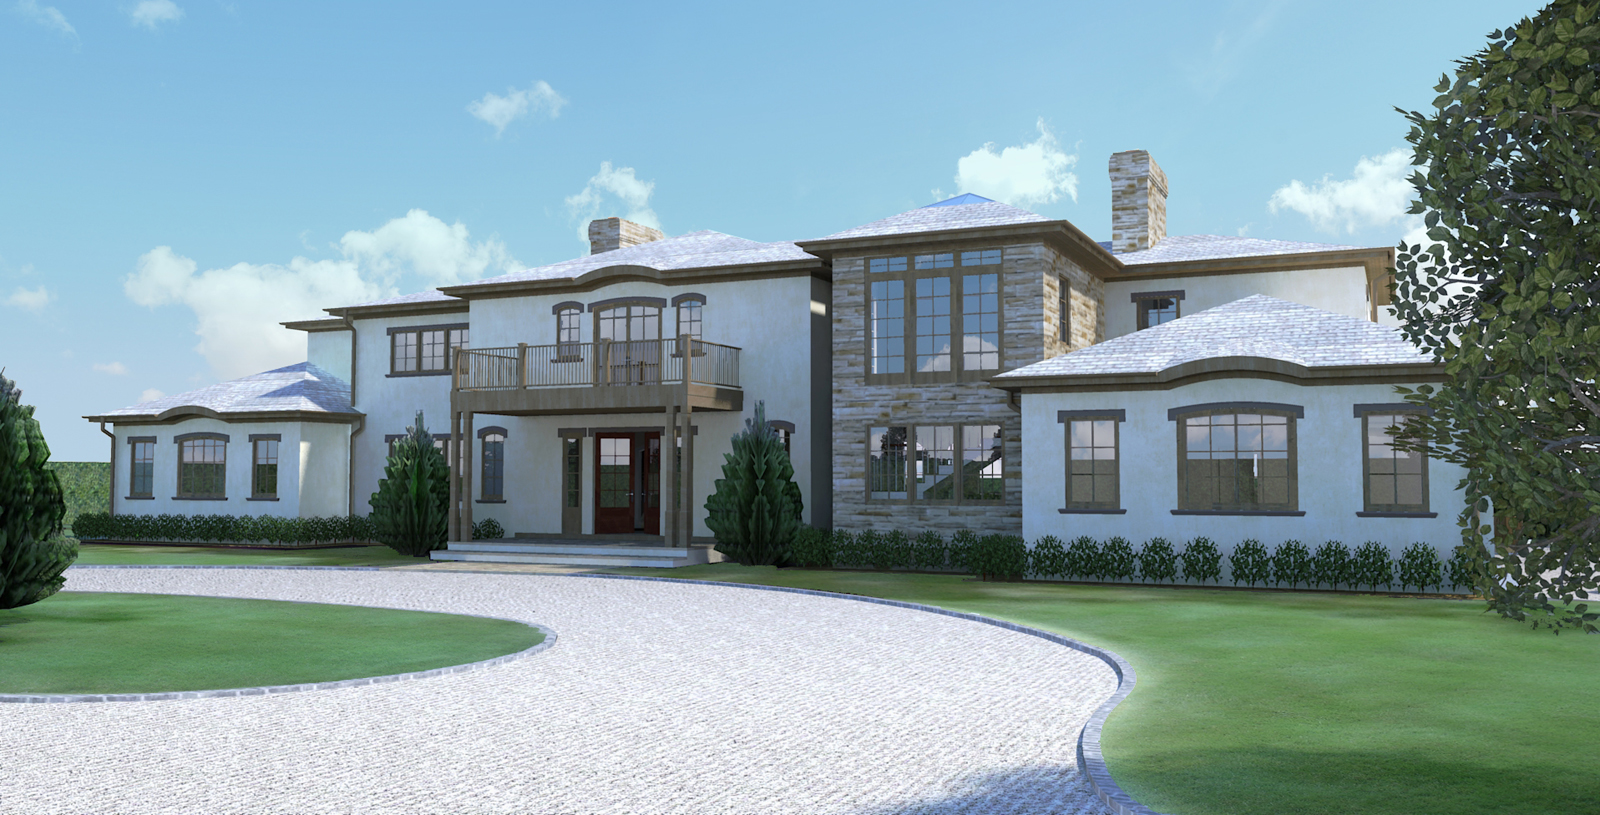 Hamptons Tuscan Villa render 2.jpg